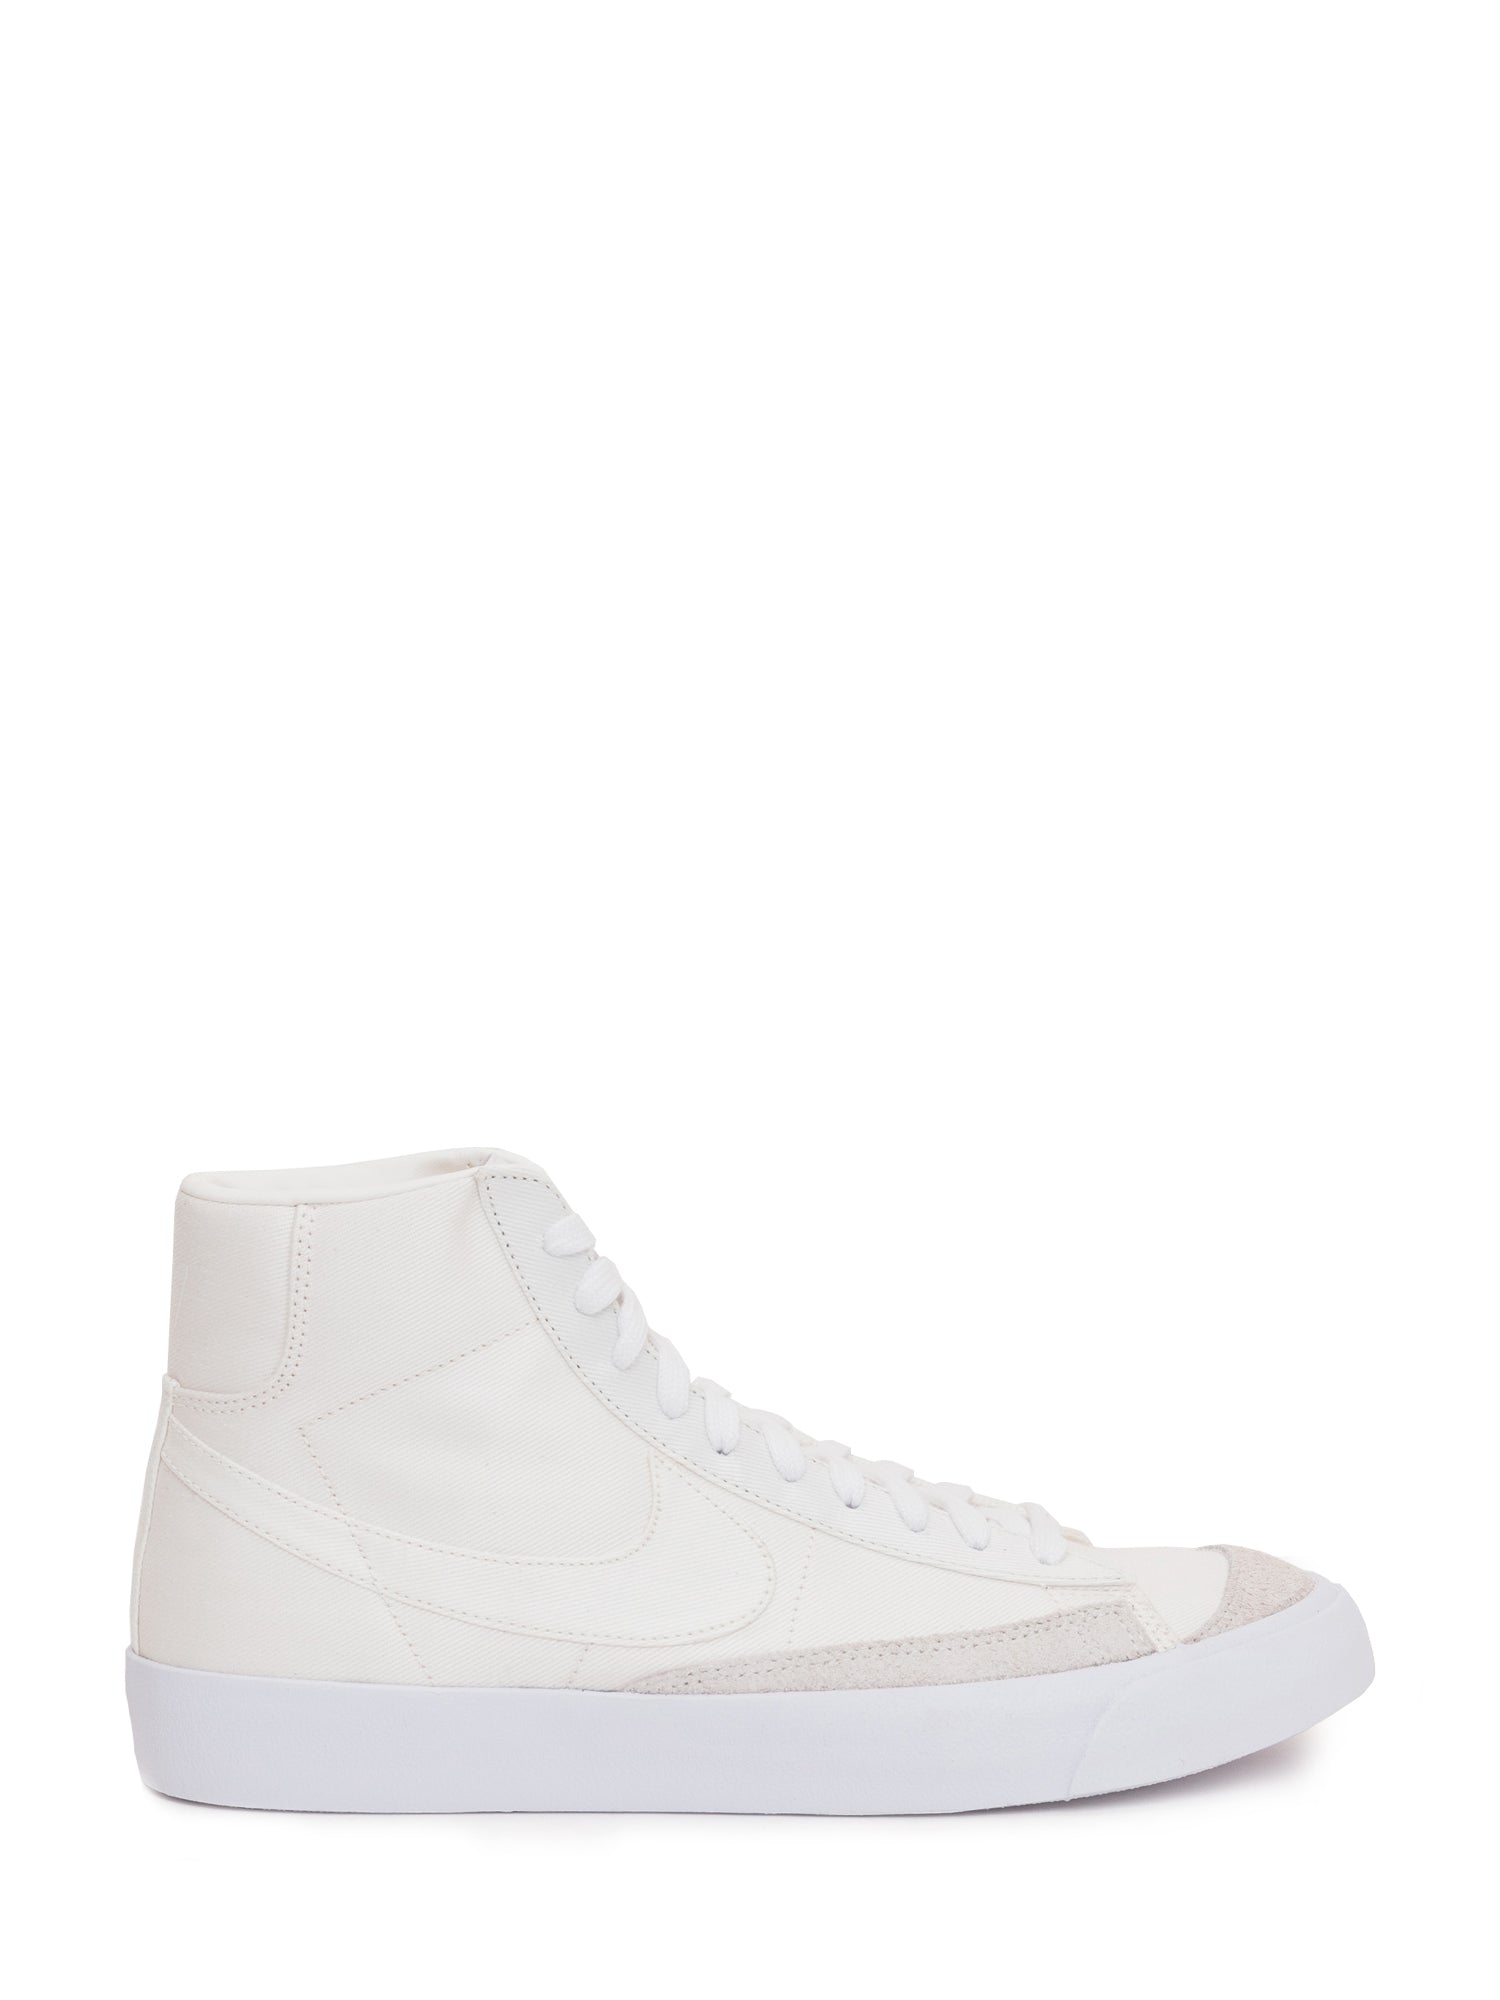 Nike Blazer Mid '77 Vintage Sneakers In White